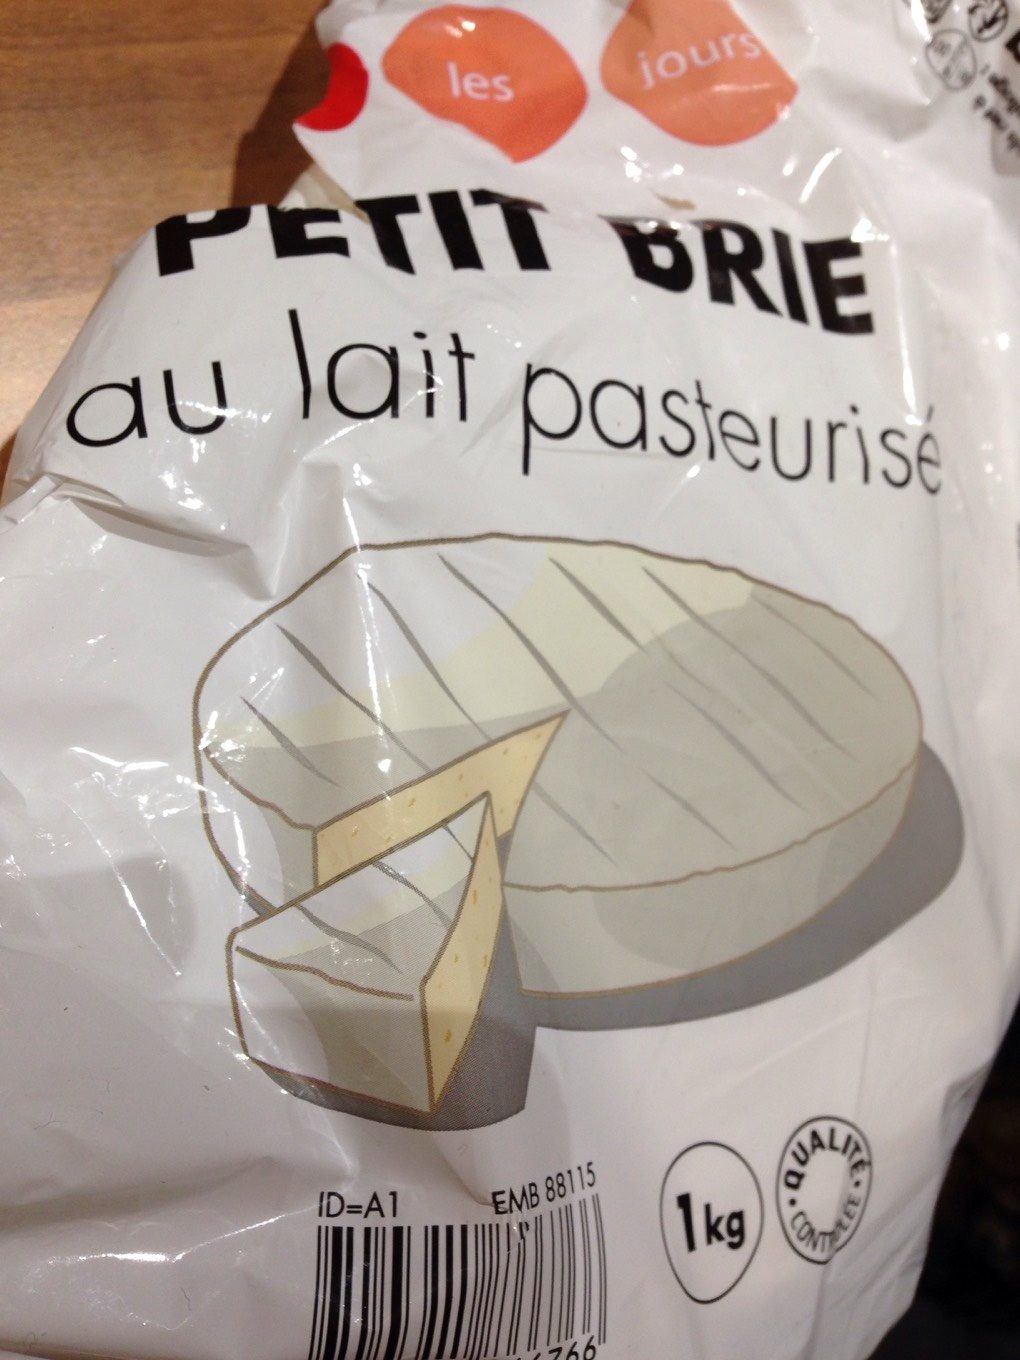 Petit Brie au lait pasteurisé - Product - fr